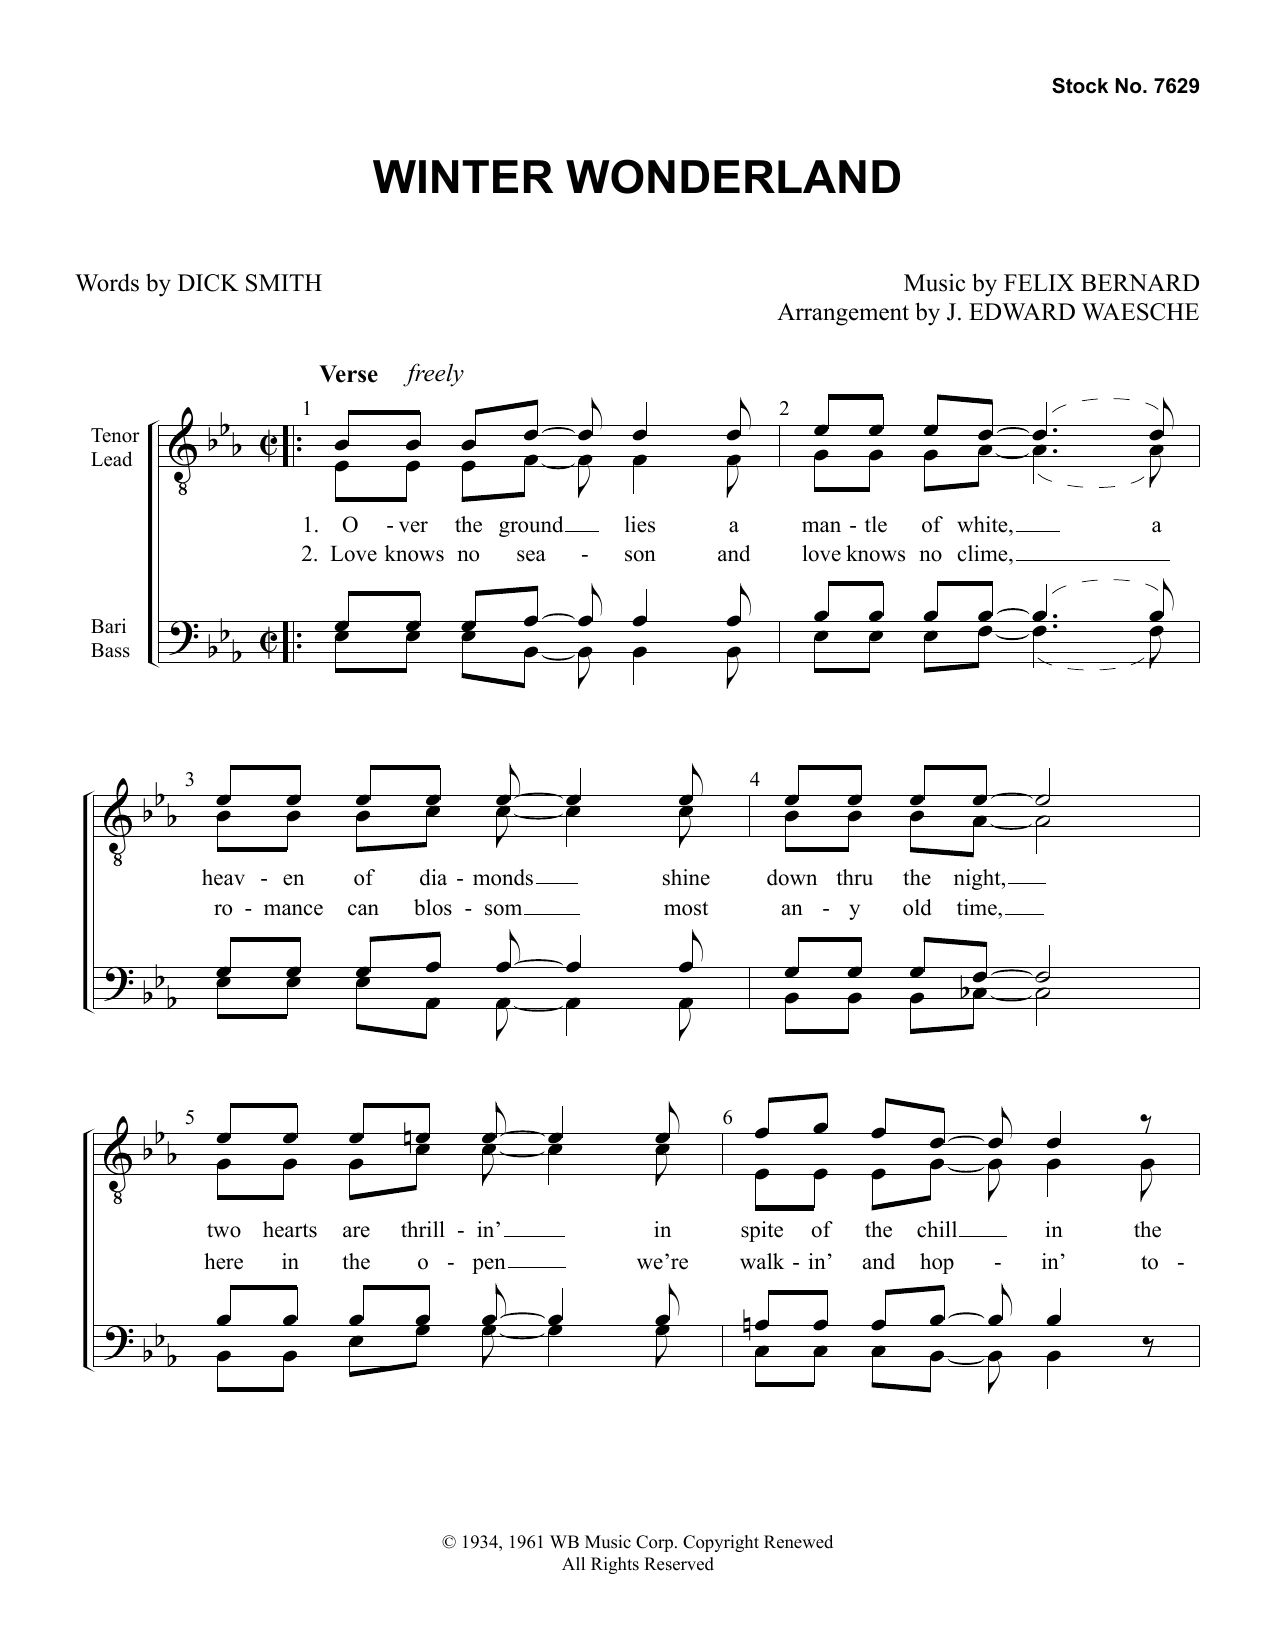 Dick Smith & Felix Bernard Winter Wonderland (arr. Ed Waesche) sheet music notes and chords arranged for TTBB Choir